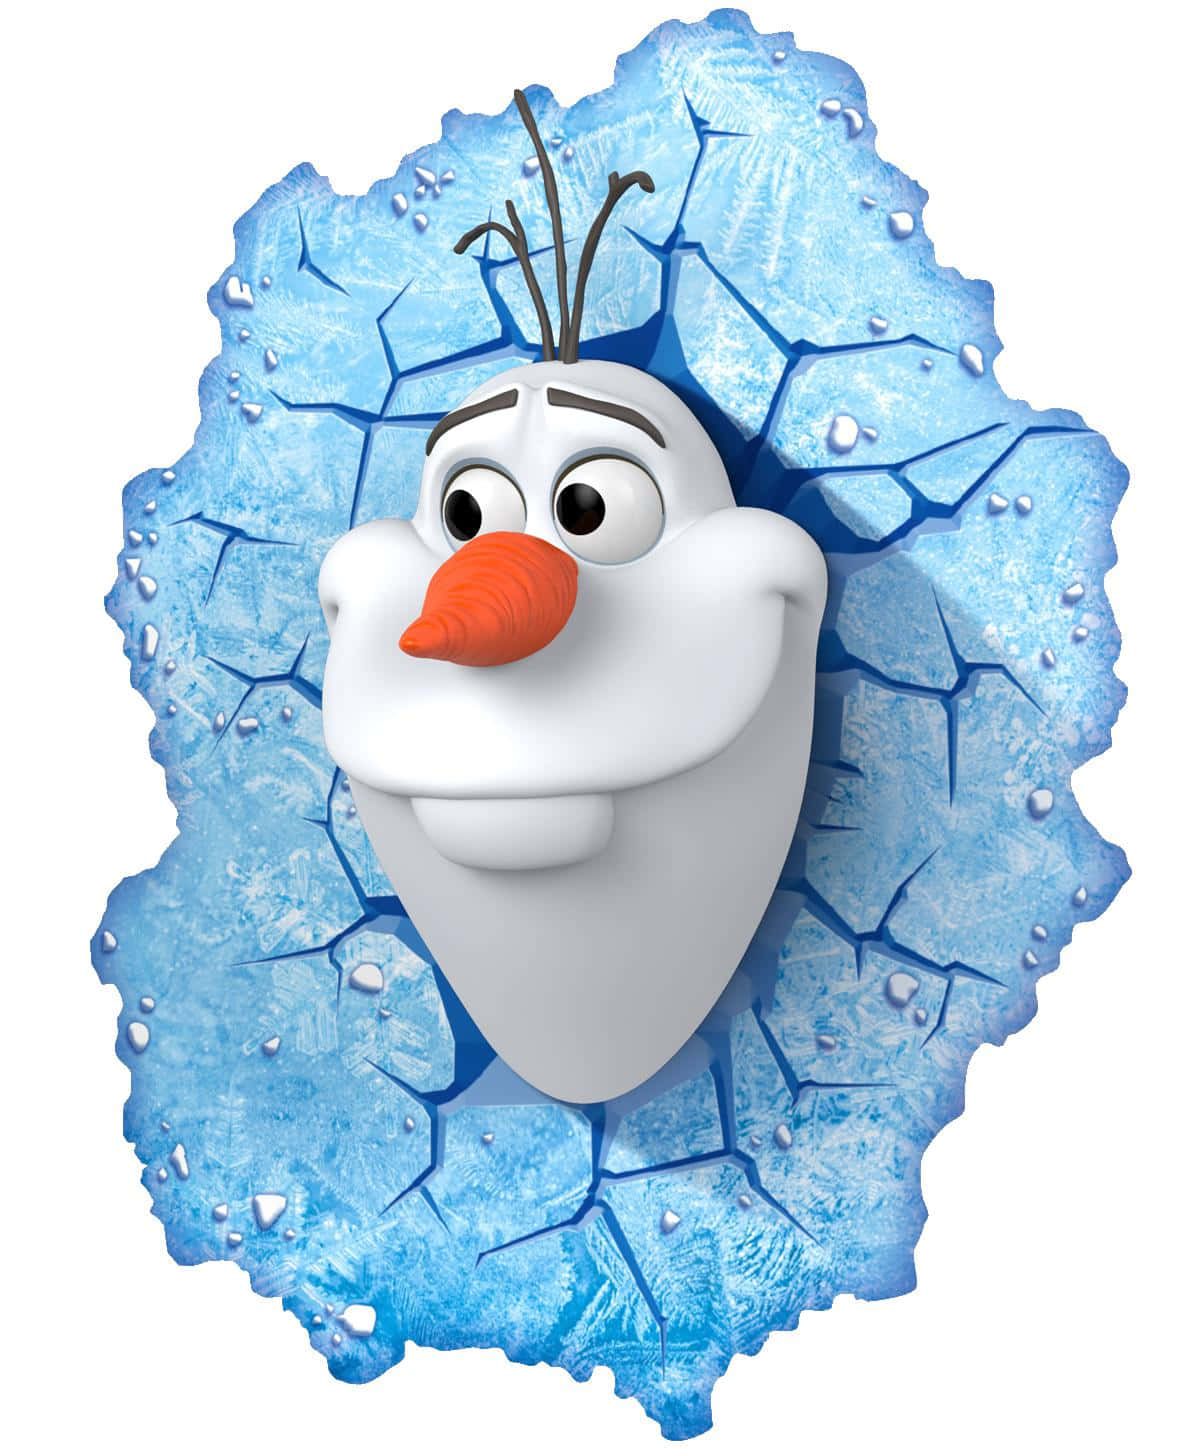 ¡vamosa Divertirnos En La Nieve Con Olaf!